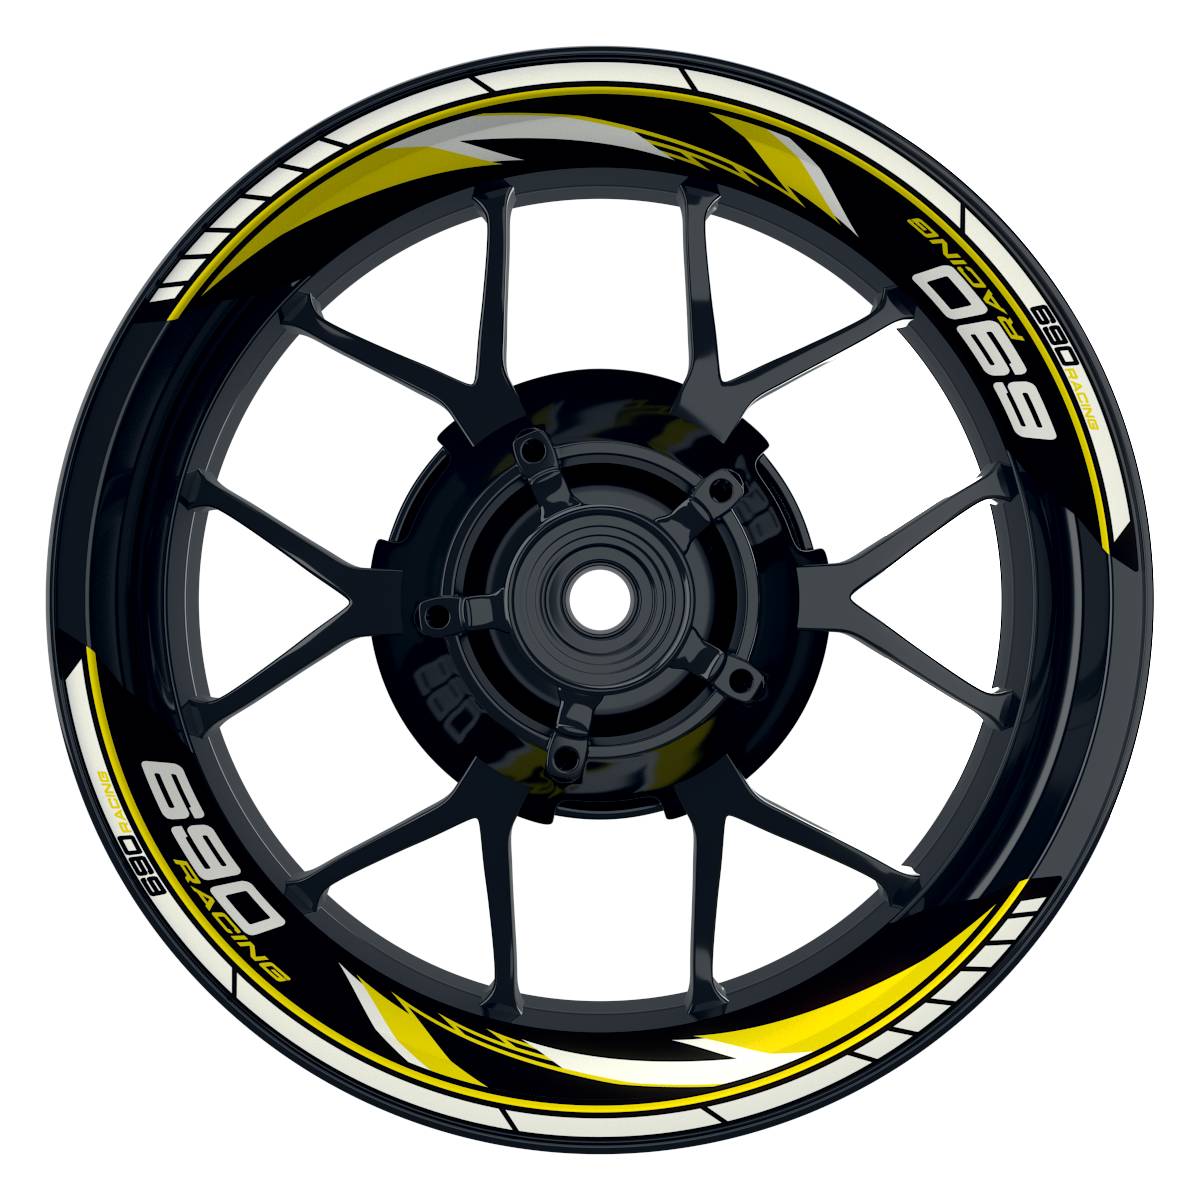 KTM Racing 690 Razor schwarz gelb Frontansicht